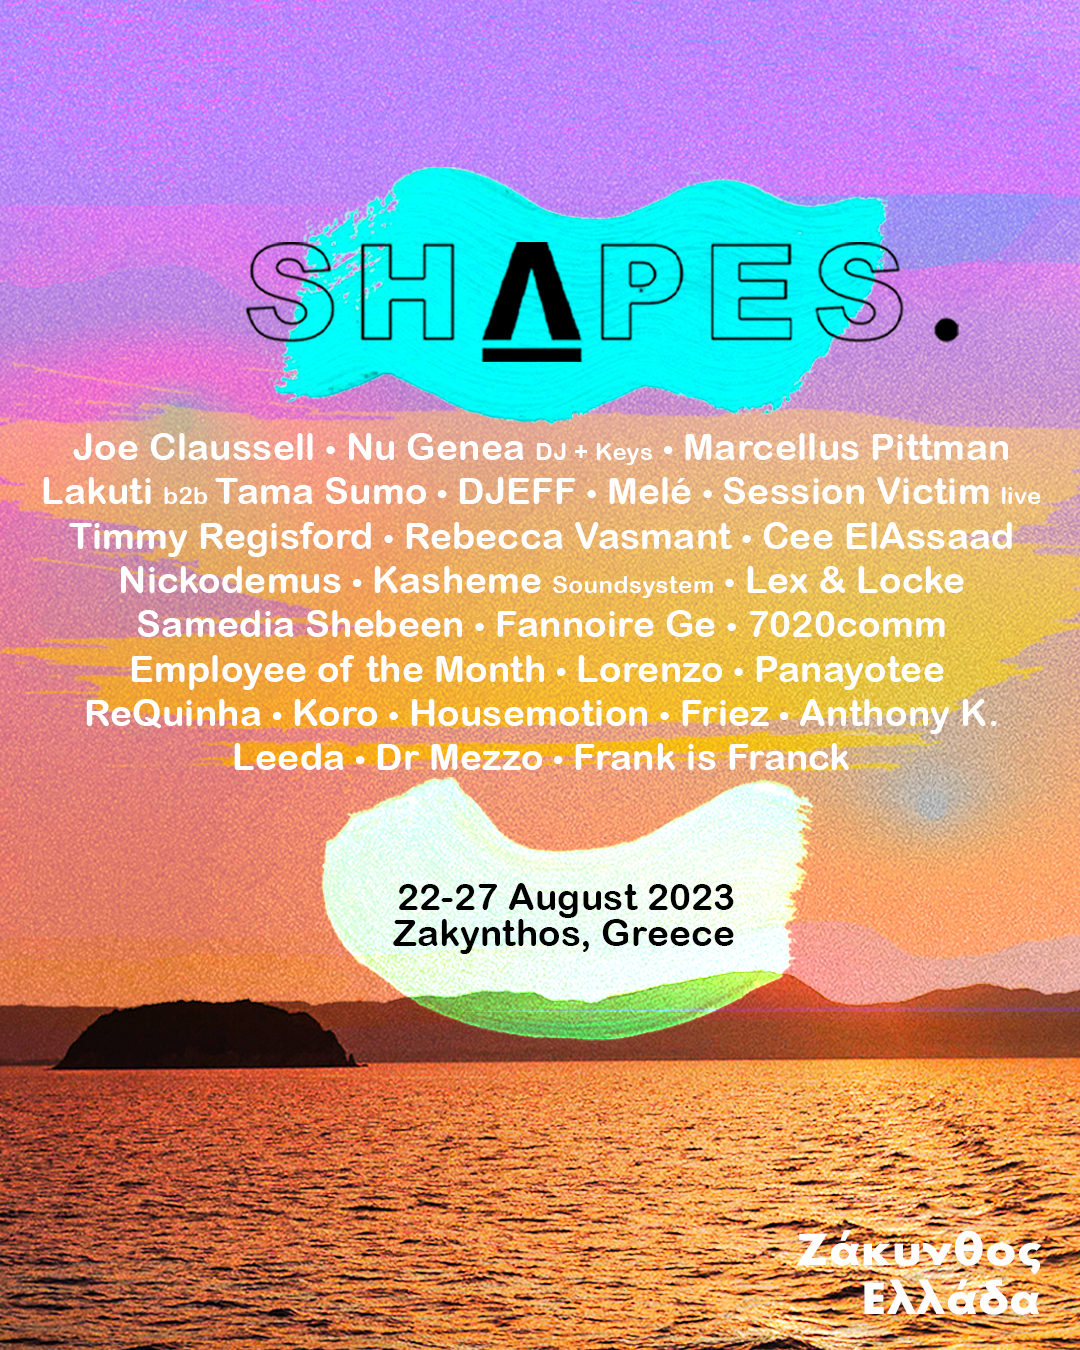 Shapes Festival Zakynthos 2023 - フライヤー表